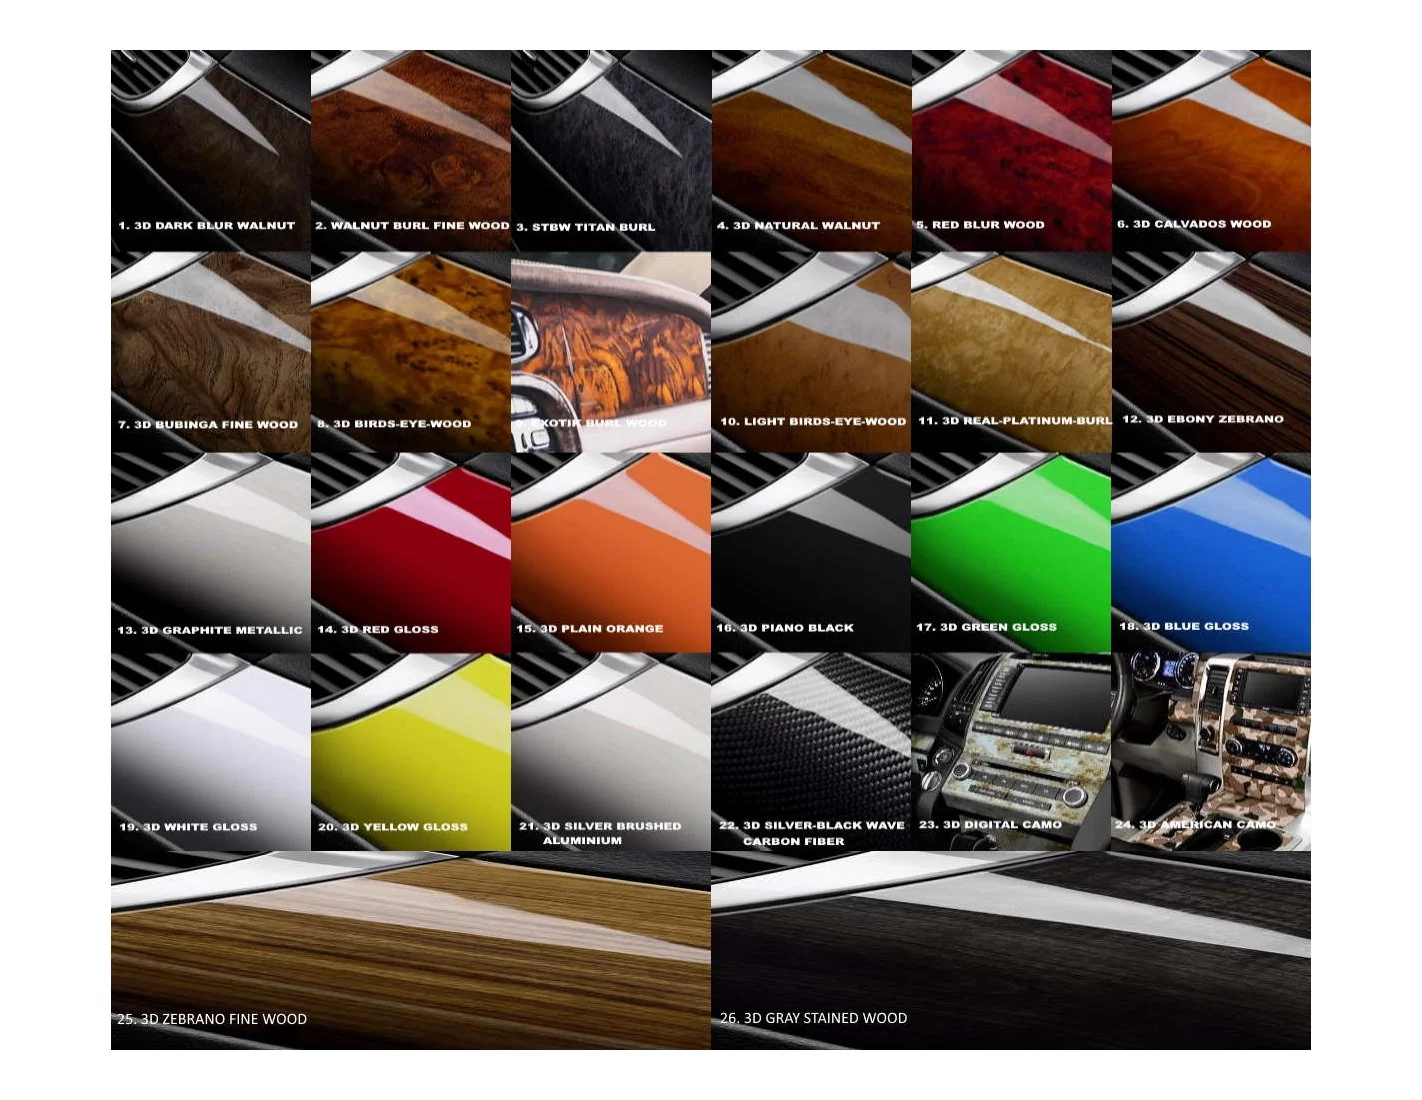 Honda Odyssey 2011-2013 Full Set, Without DVD Interior BD Dash Trim Kit